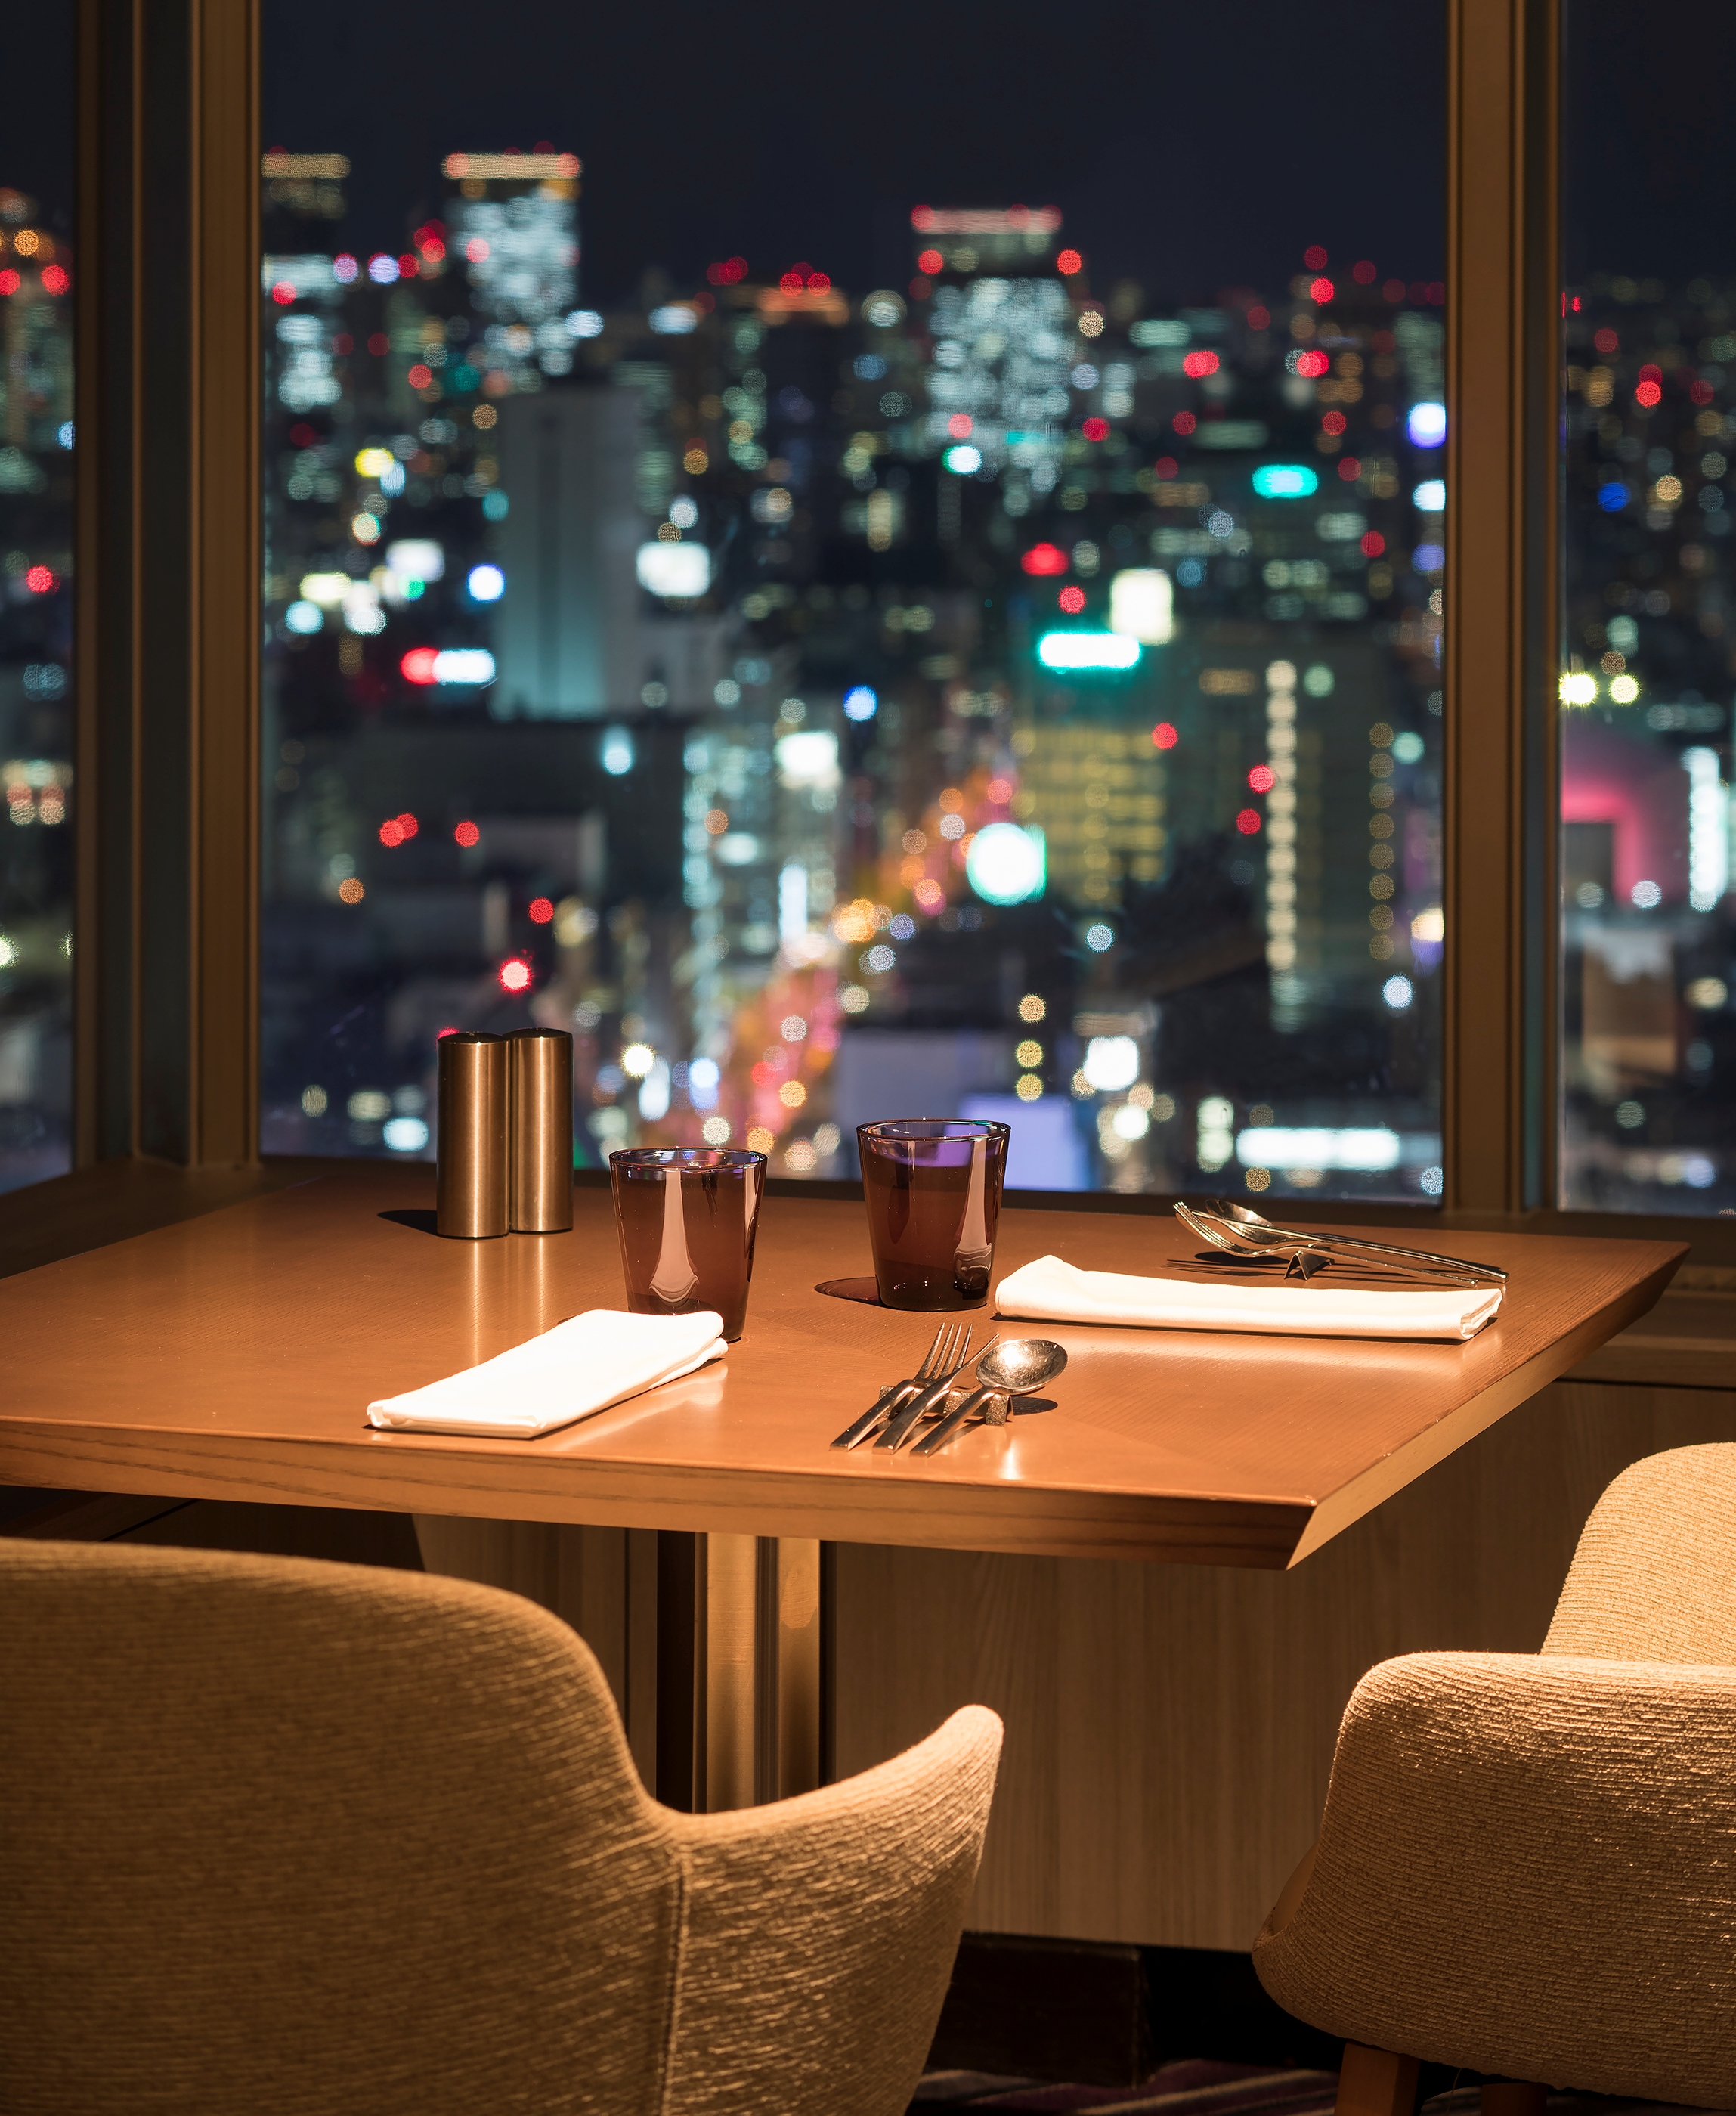 スイスホテル南海大阪 特別な夜は ホテルのスペシャルビュッフェと極上夜景を堪能 スイスホテル大阪南海株式会社のプレスリリース